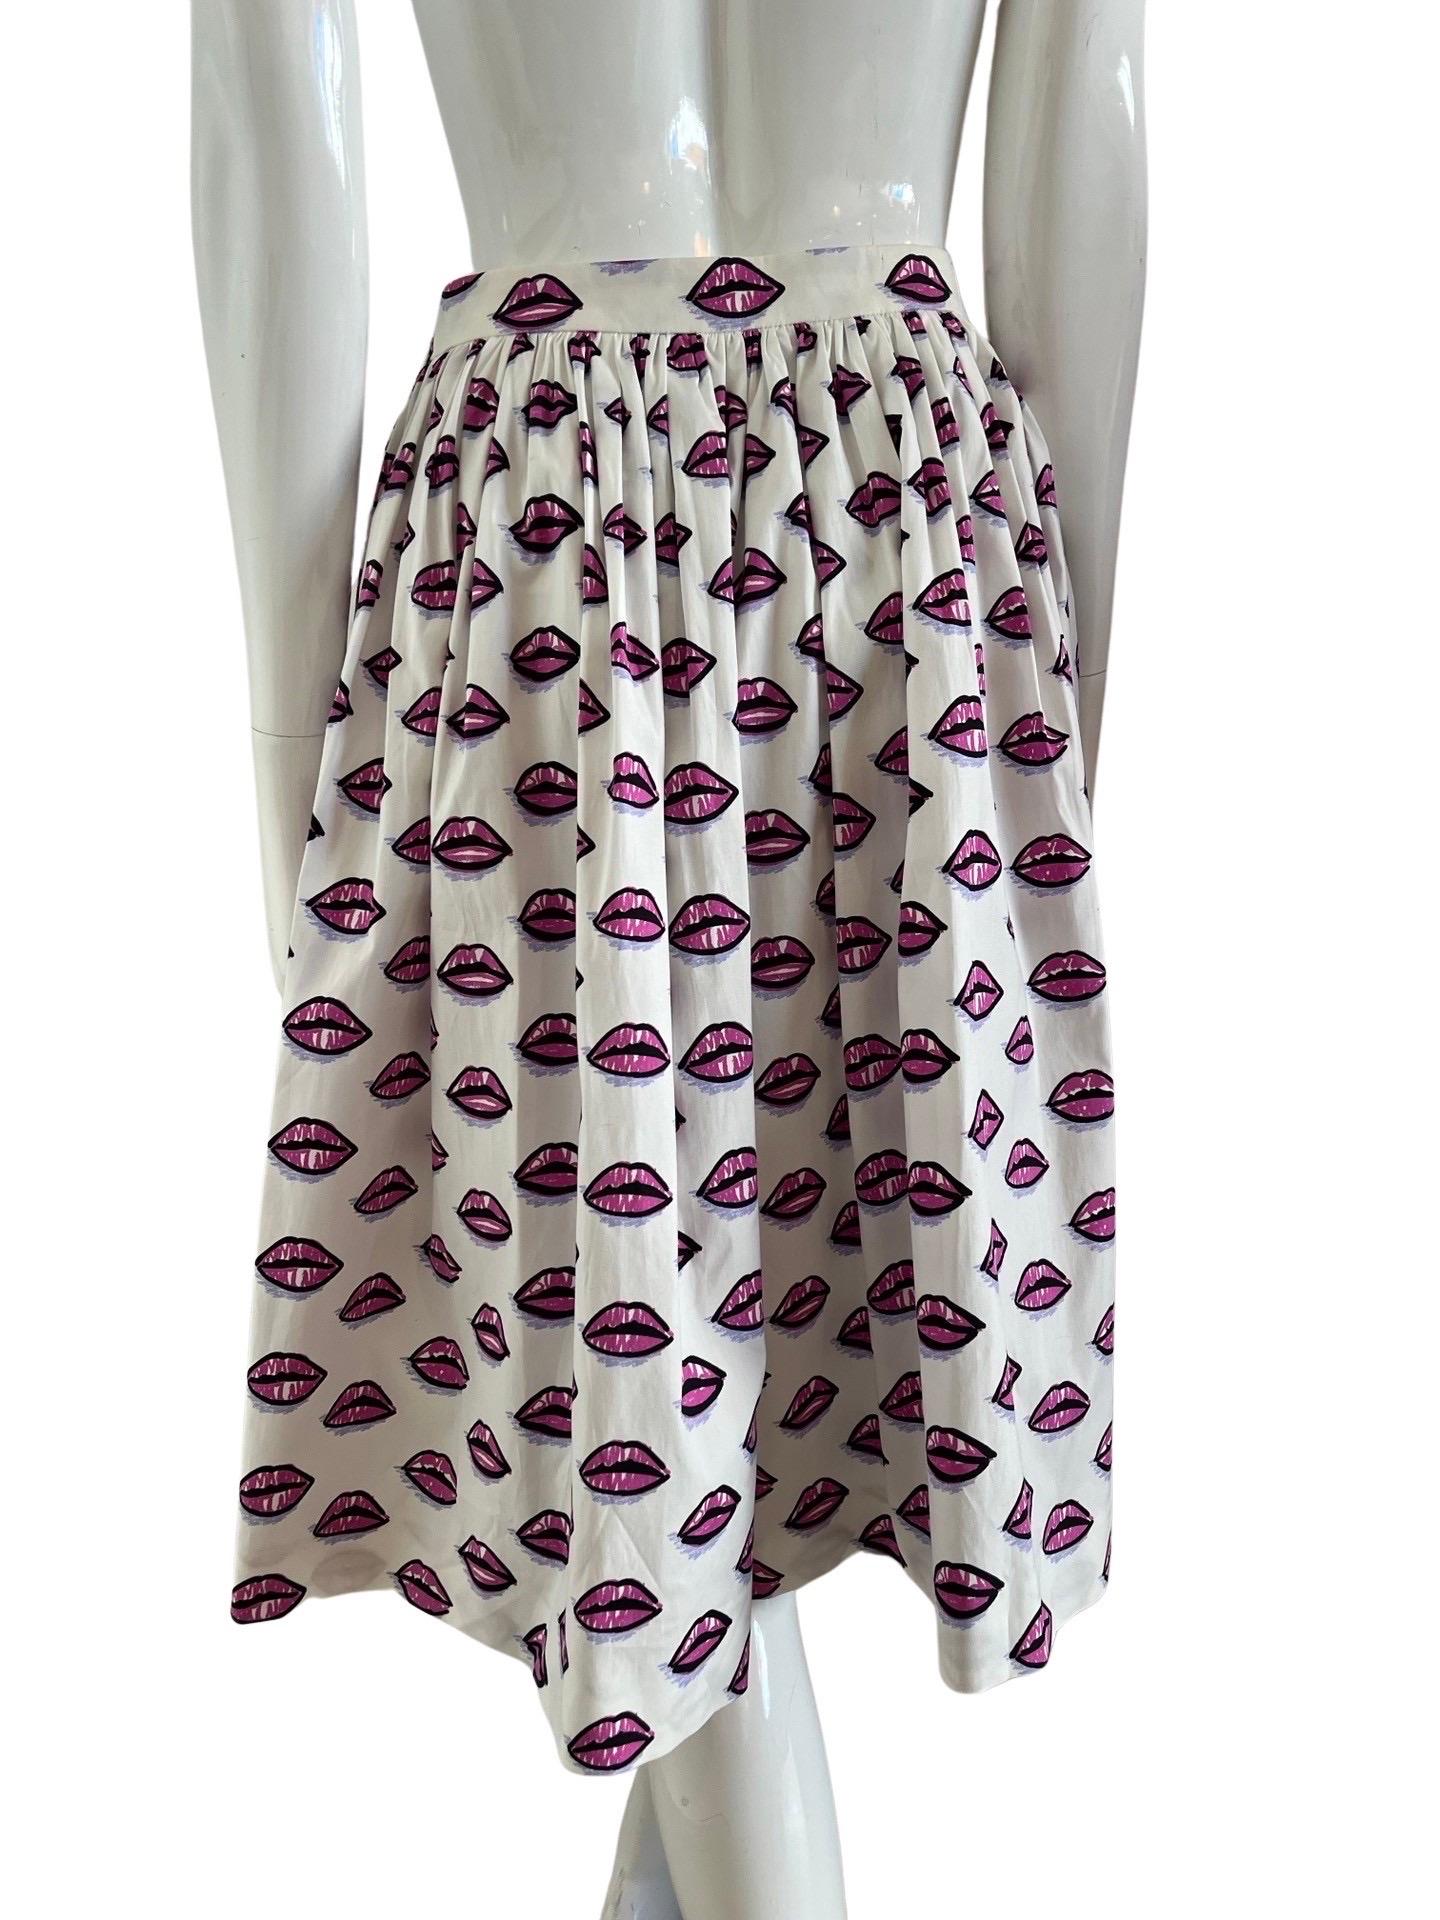 2017 Prada Iconic Lip Print Full Skirt For Sale 1